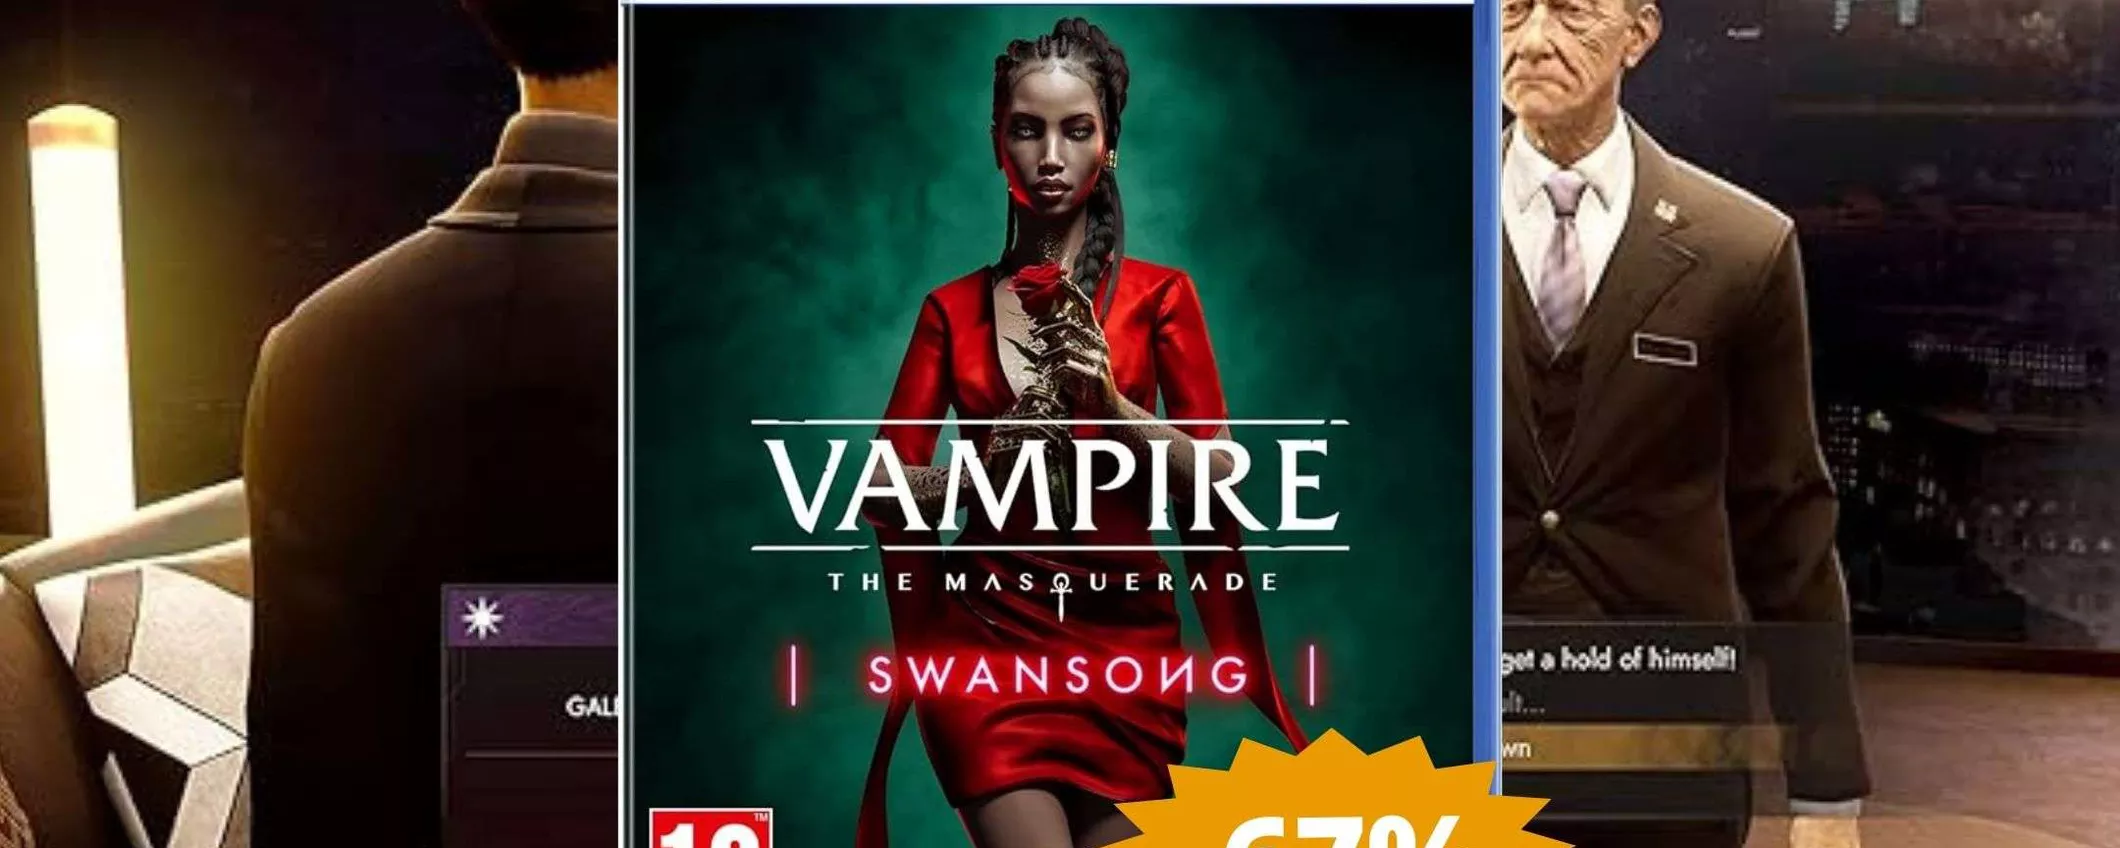 Vampire The Masquerade per PS5: prezzo RIDICOLO su Amazon